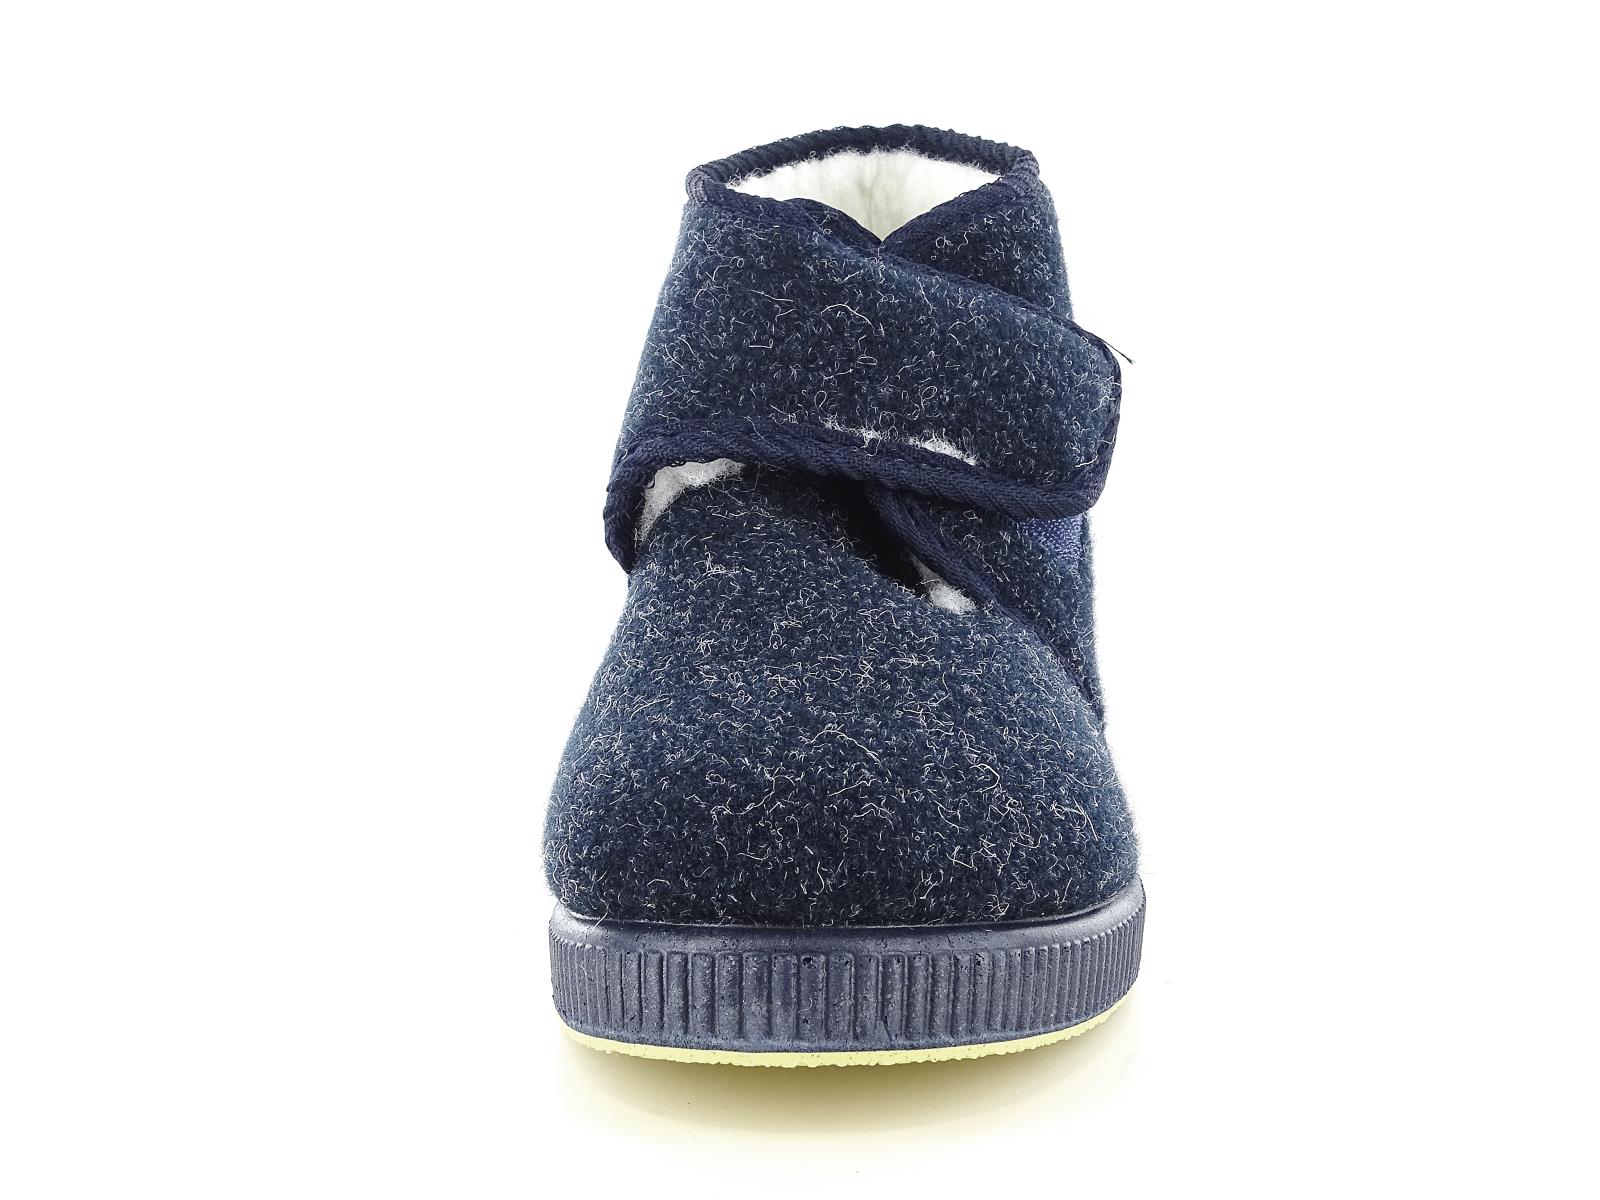 Emanuela 564 Pantofole invernali da uomo scarpe comode di colore blu di lana con strappo